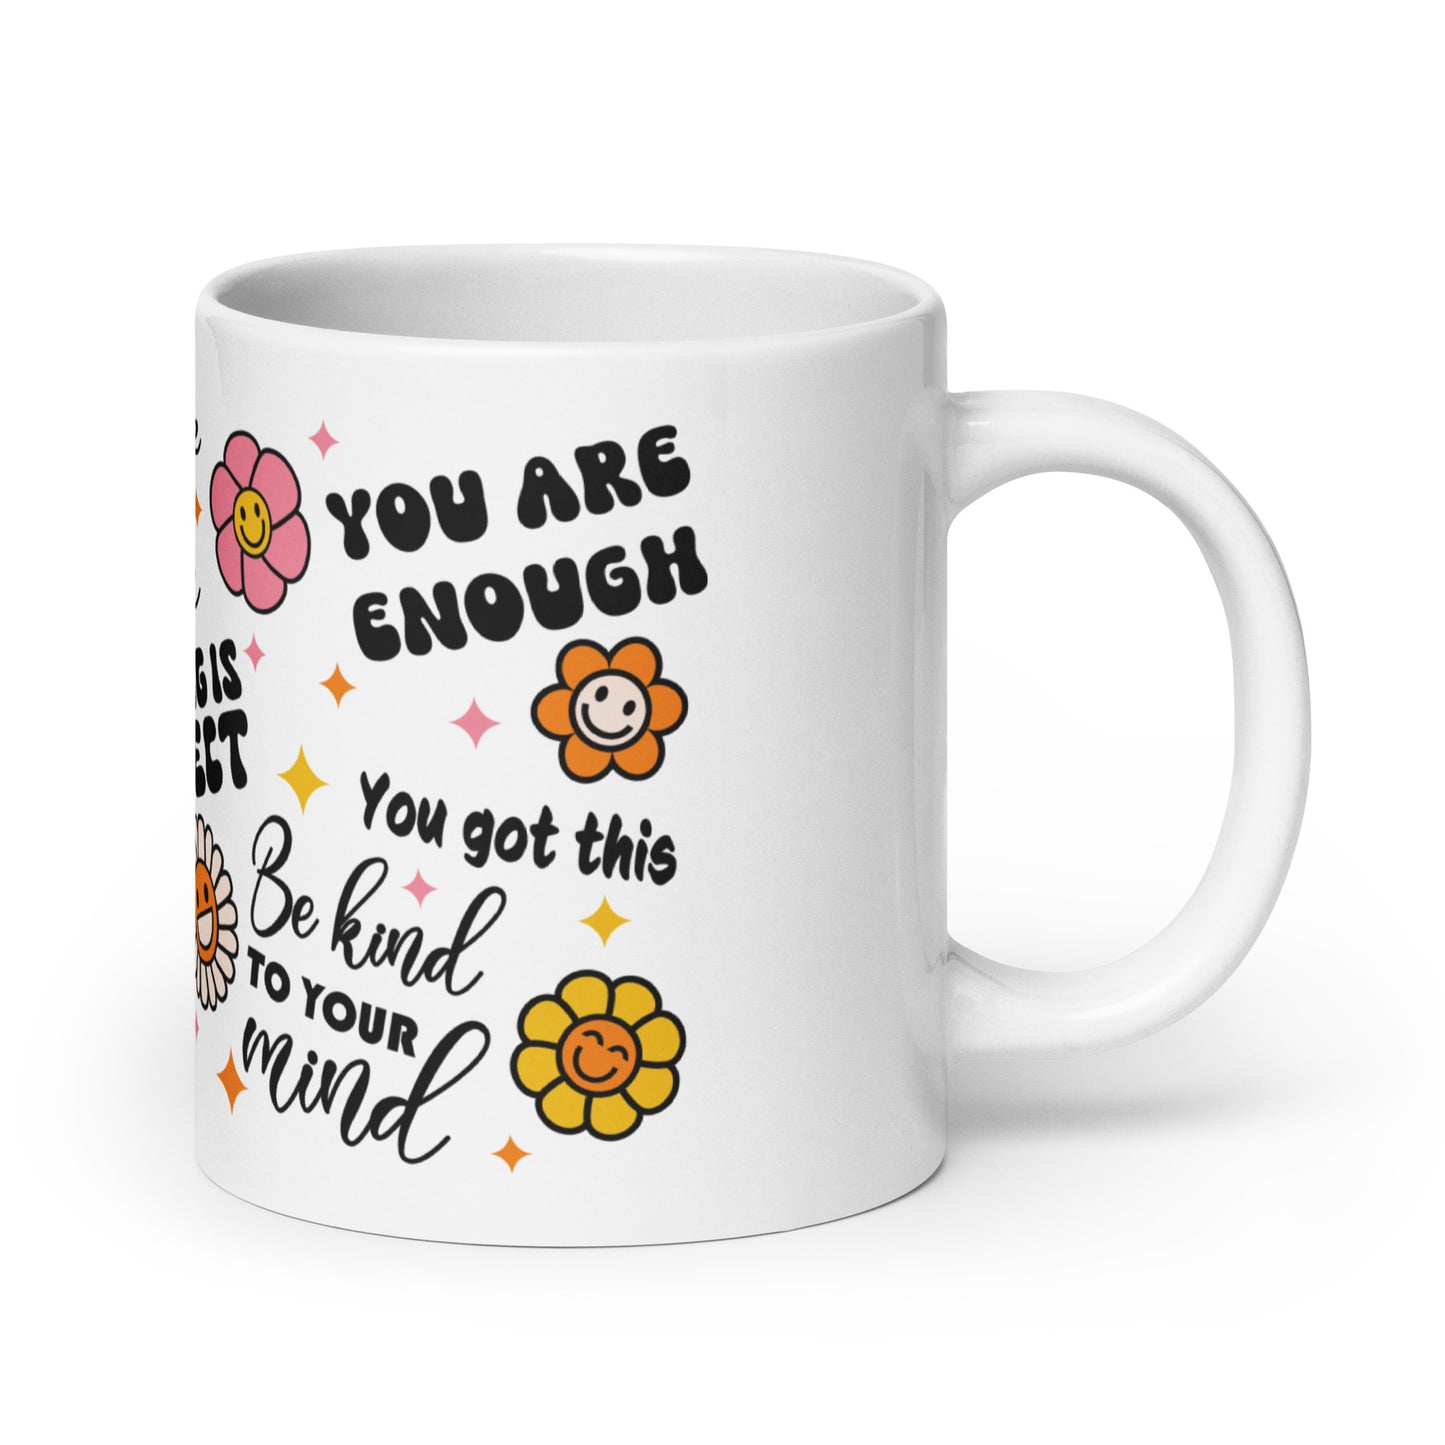 Love Yourself Self Care Awareness Ceramic Coffee Mug